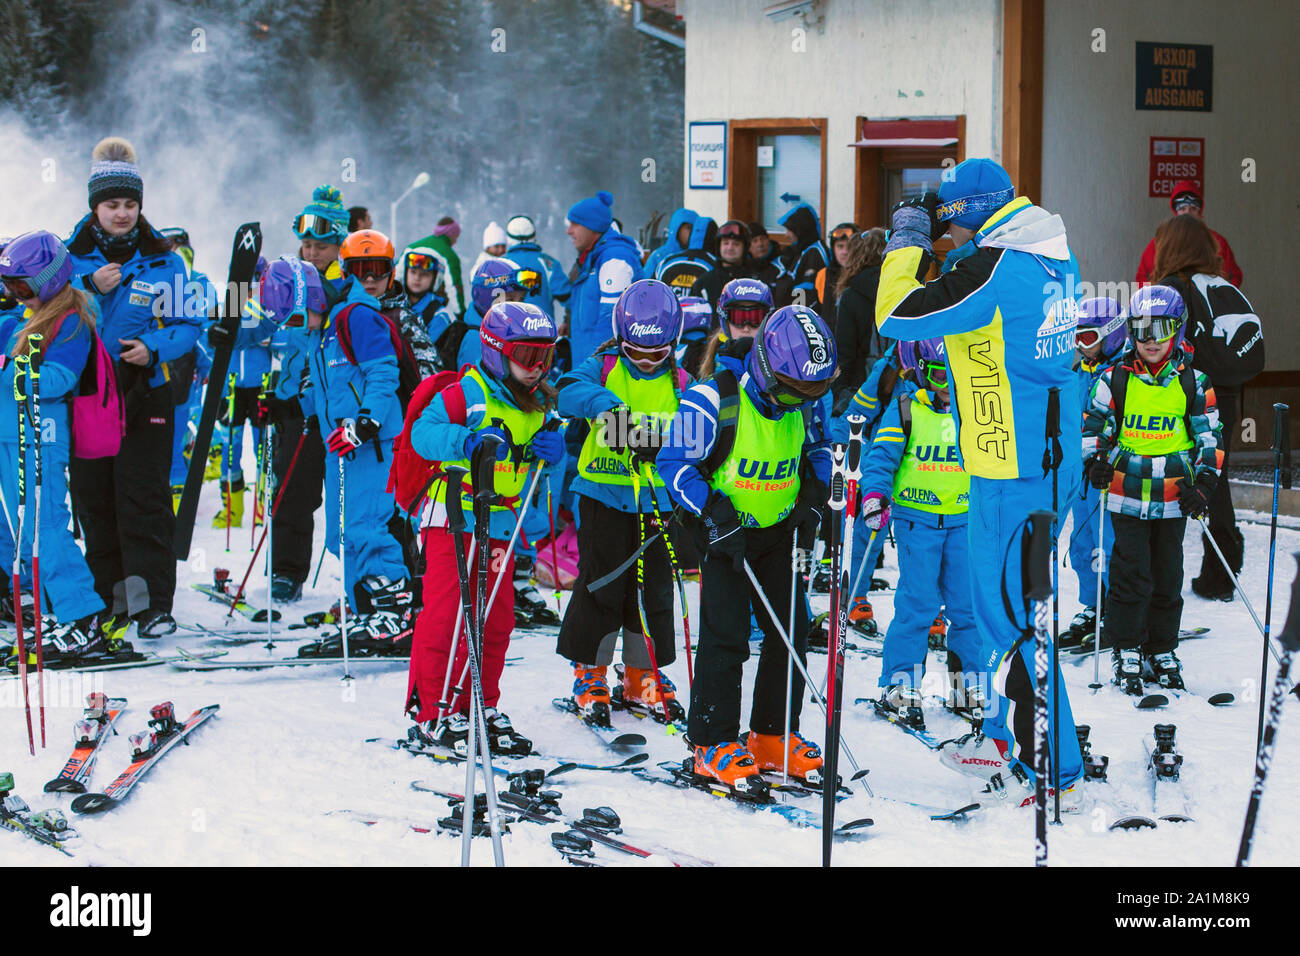 Bansko, Bulgaria - December, 12, 2015: Many young skiers preparing to ski in Bansko, Bulgaria Stock Photo